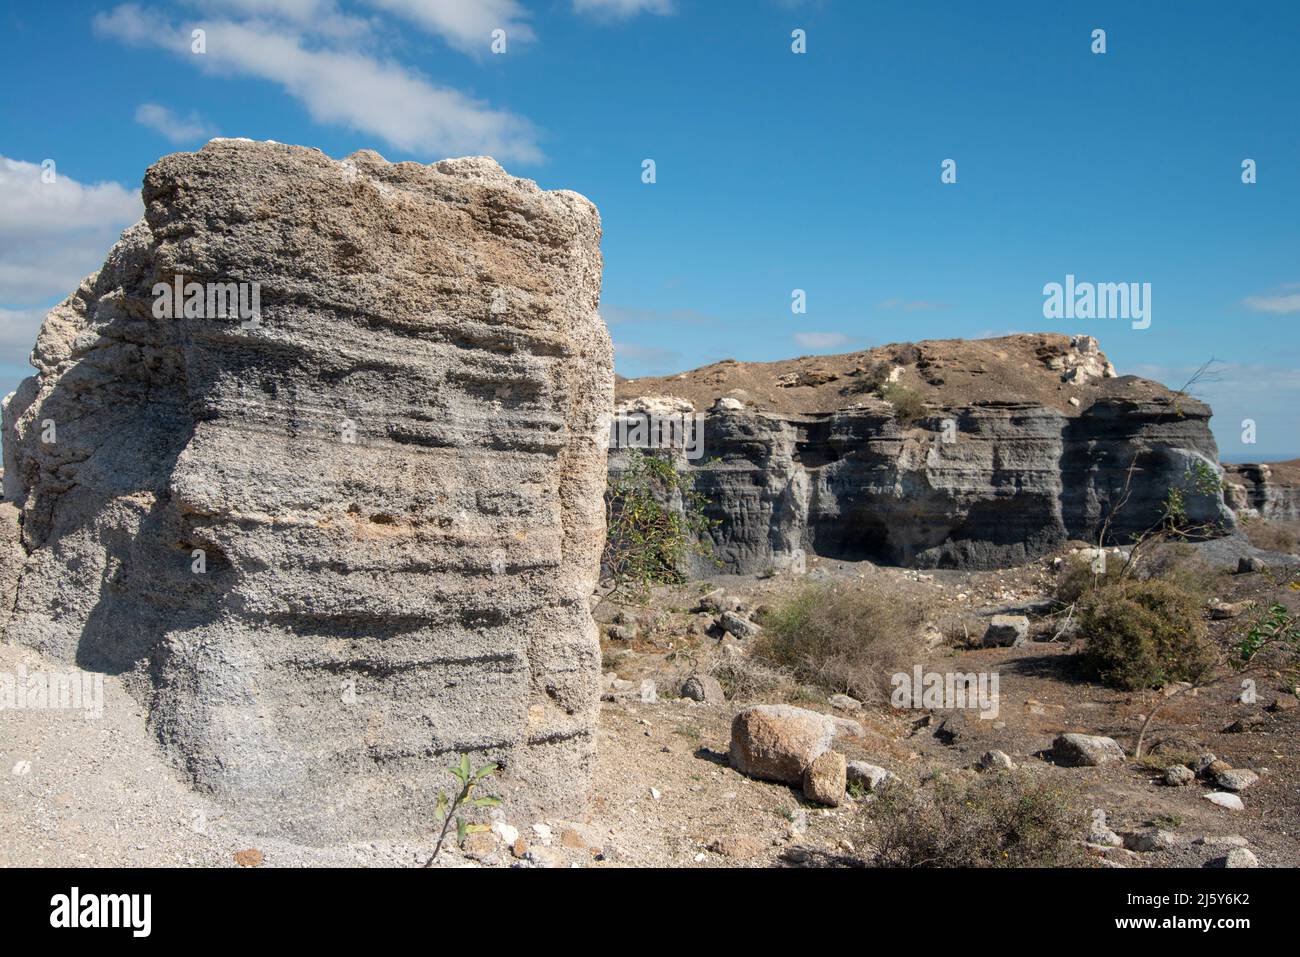 Die Felsformationen bleiben erhalten, nachdem die Erosion durch den Wind etwas Erde weggenommen hat. Stockfoto